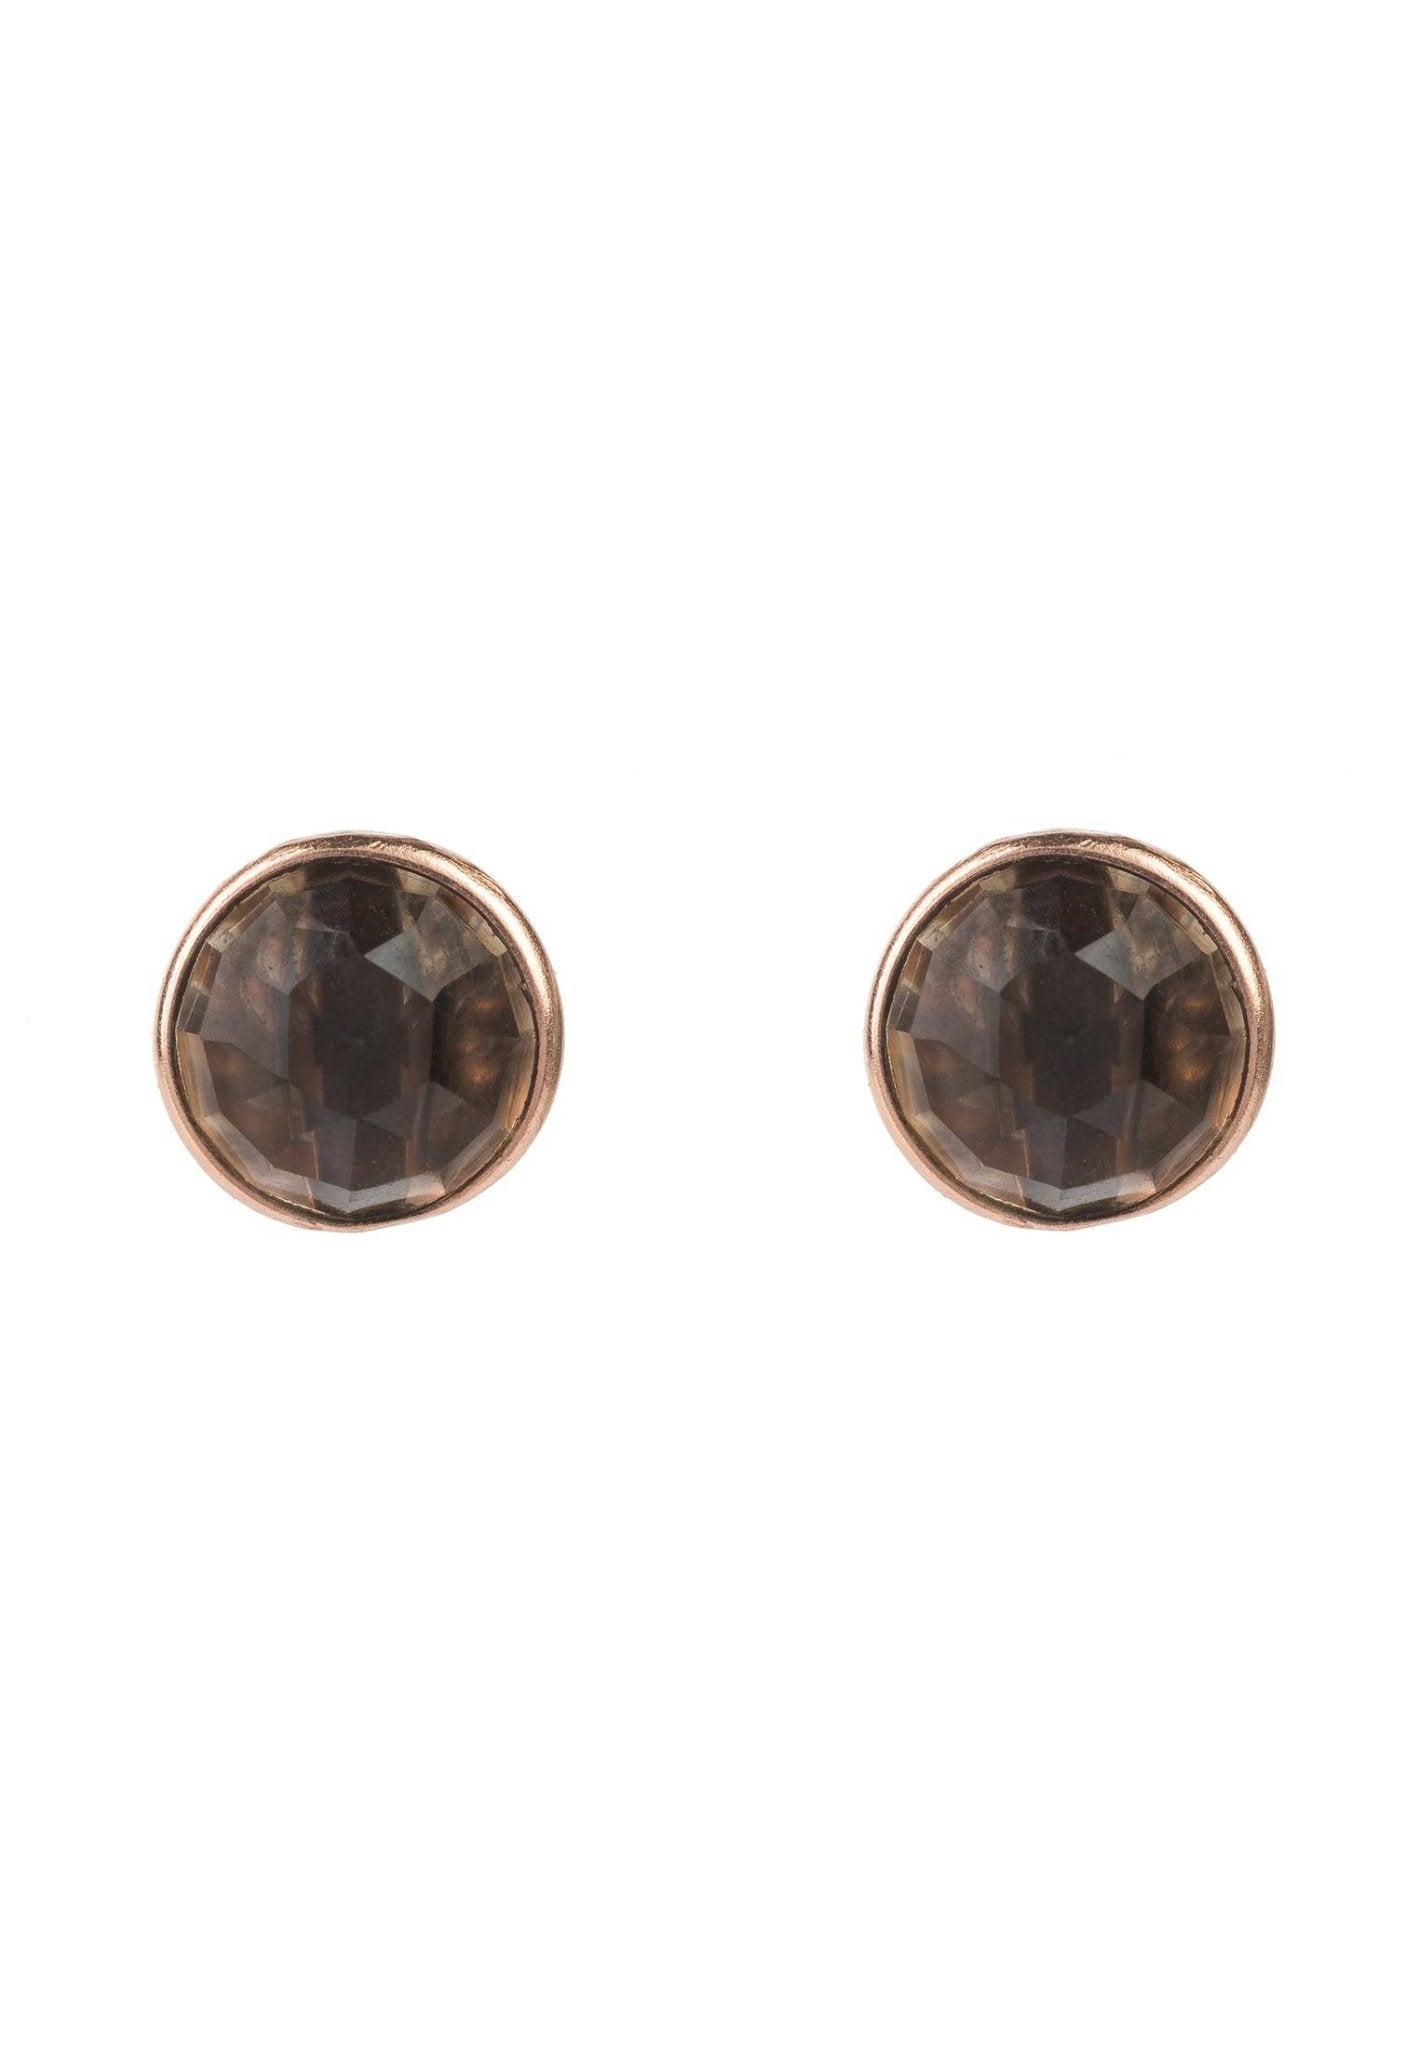 Medium Circle Gemstone Earrings Rosegold Smokey Quartz - LATELITA Earrings